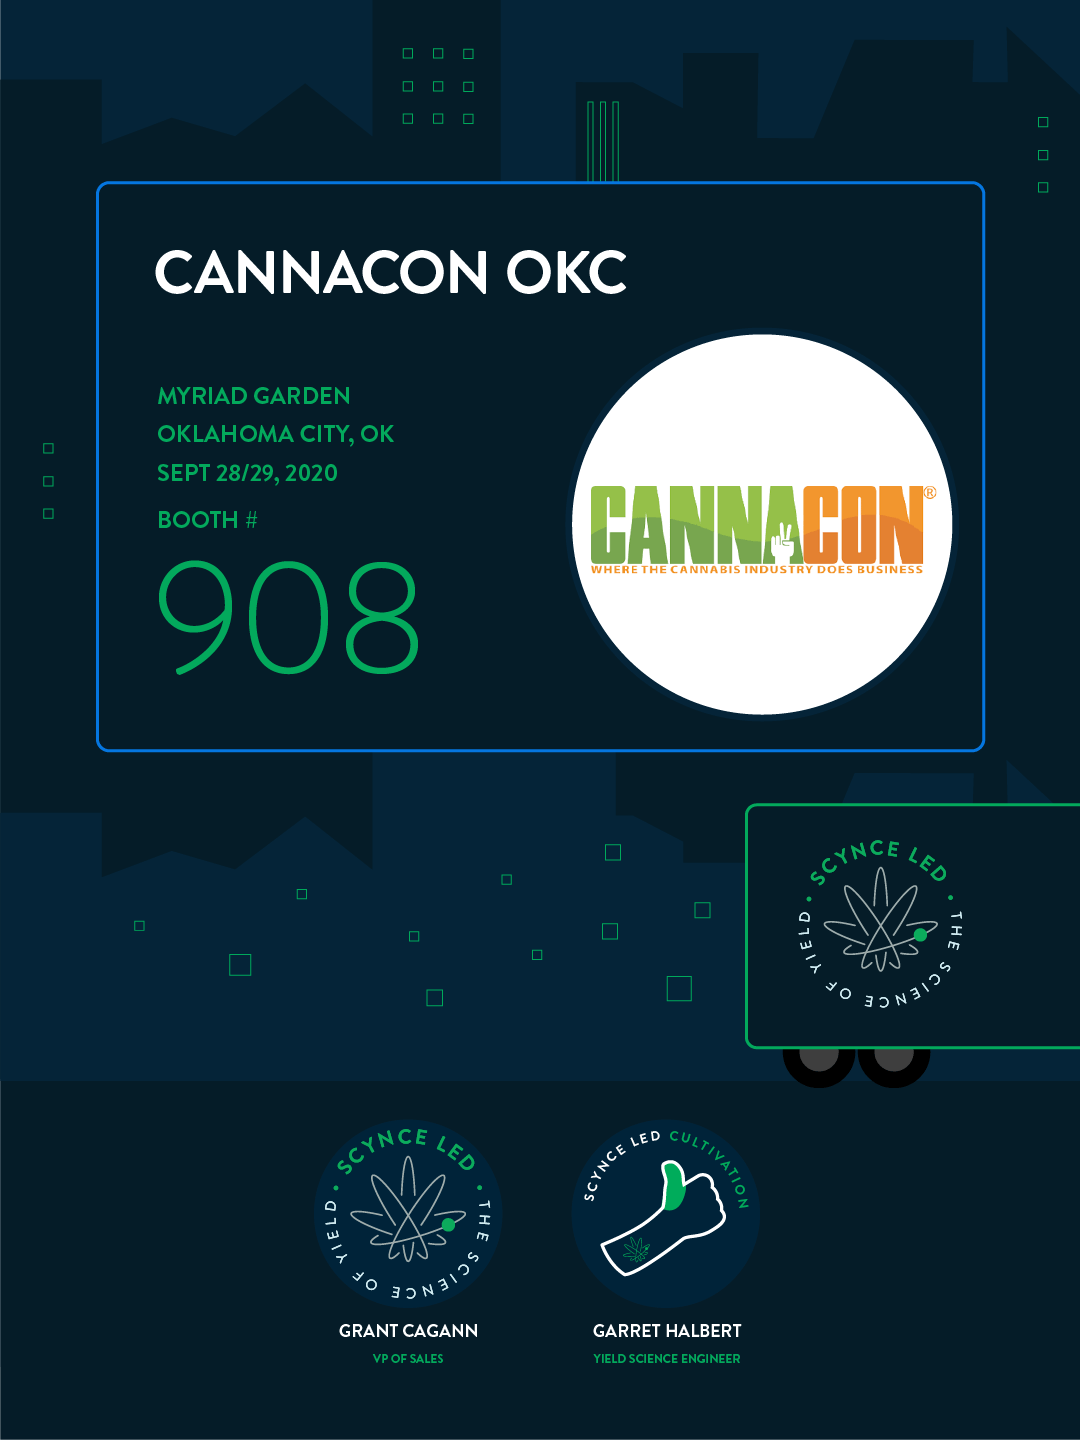 Trade Show – Cannacon OKC 2020